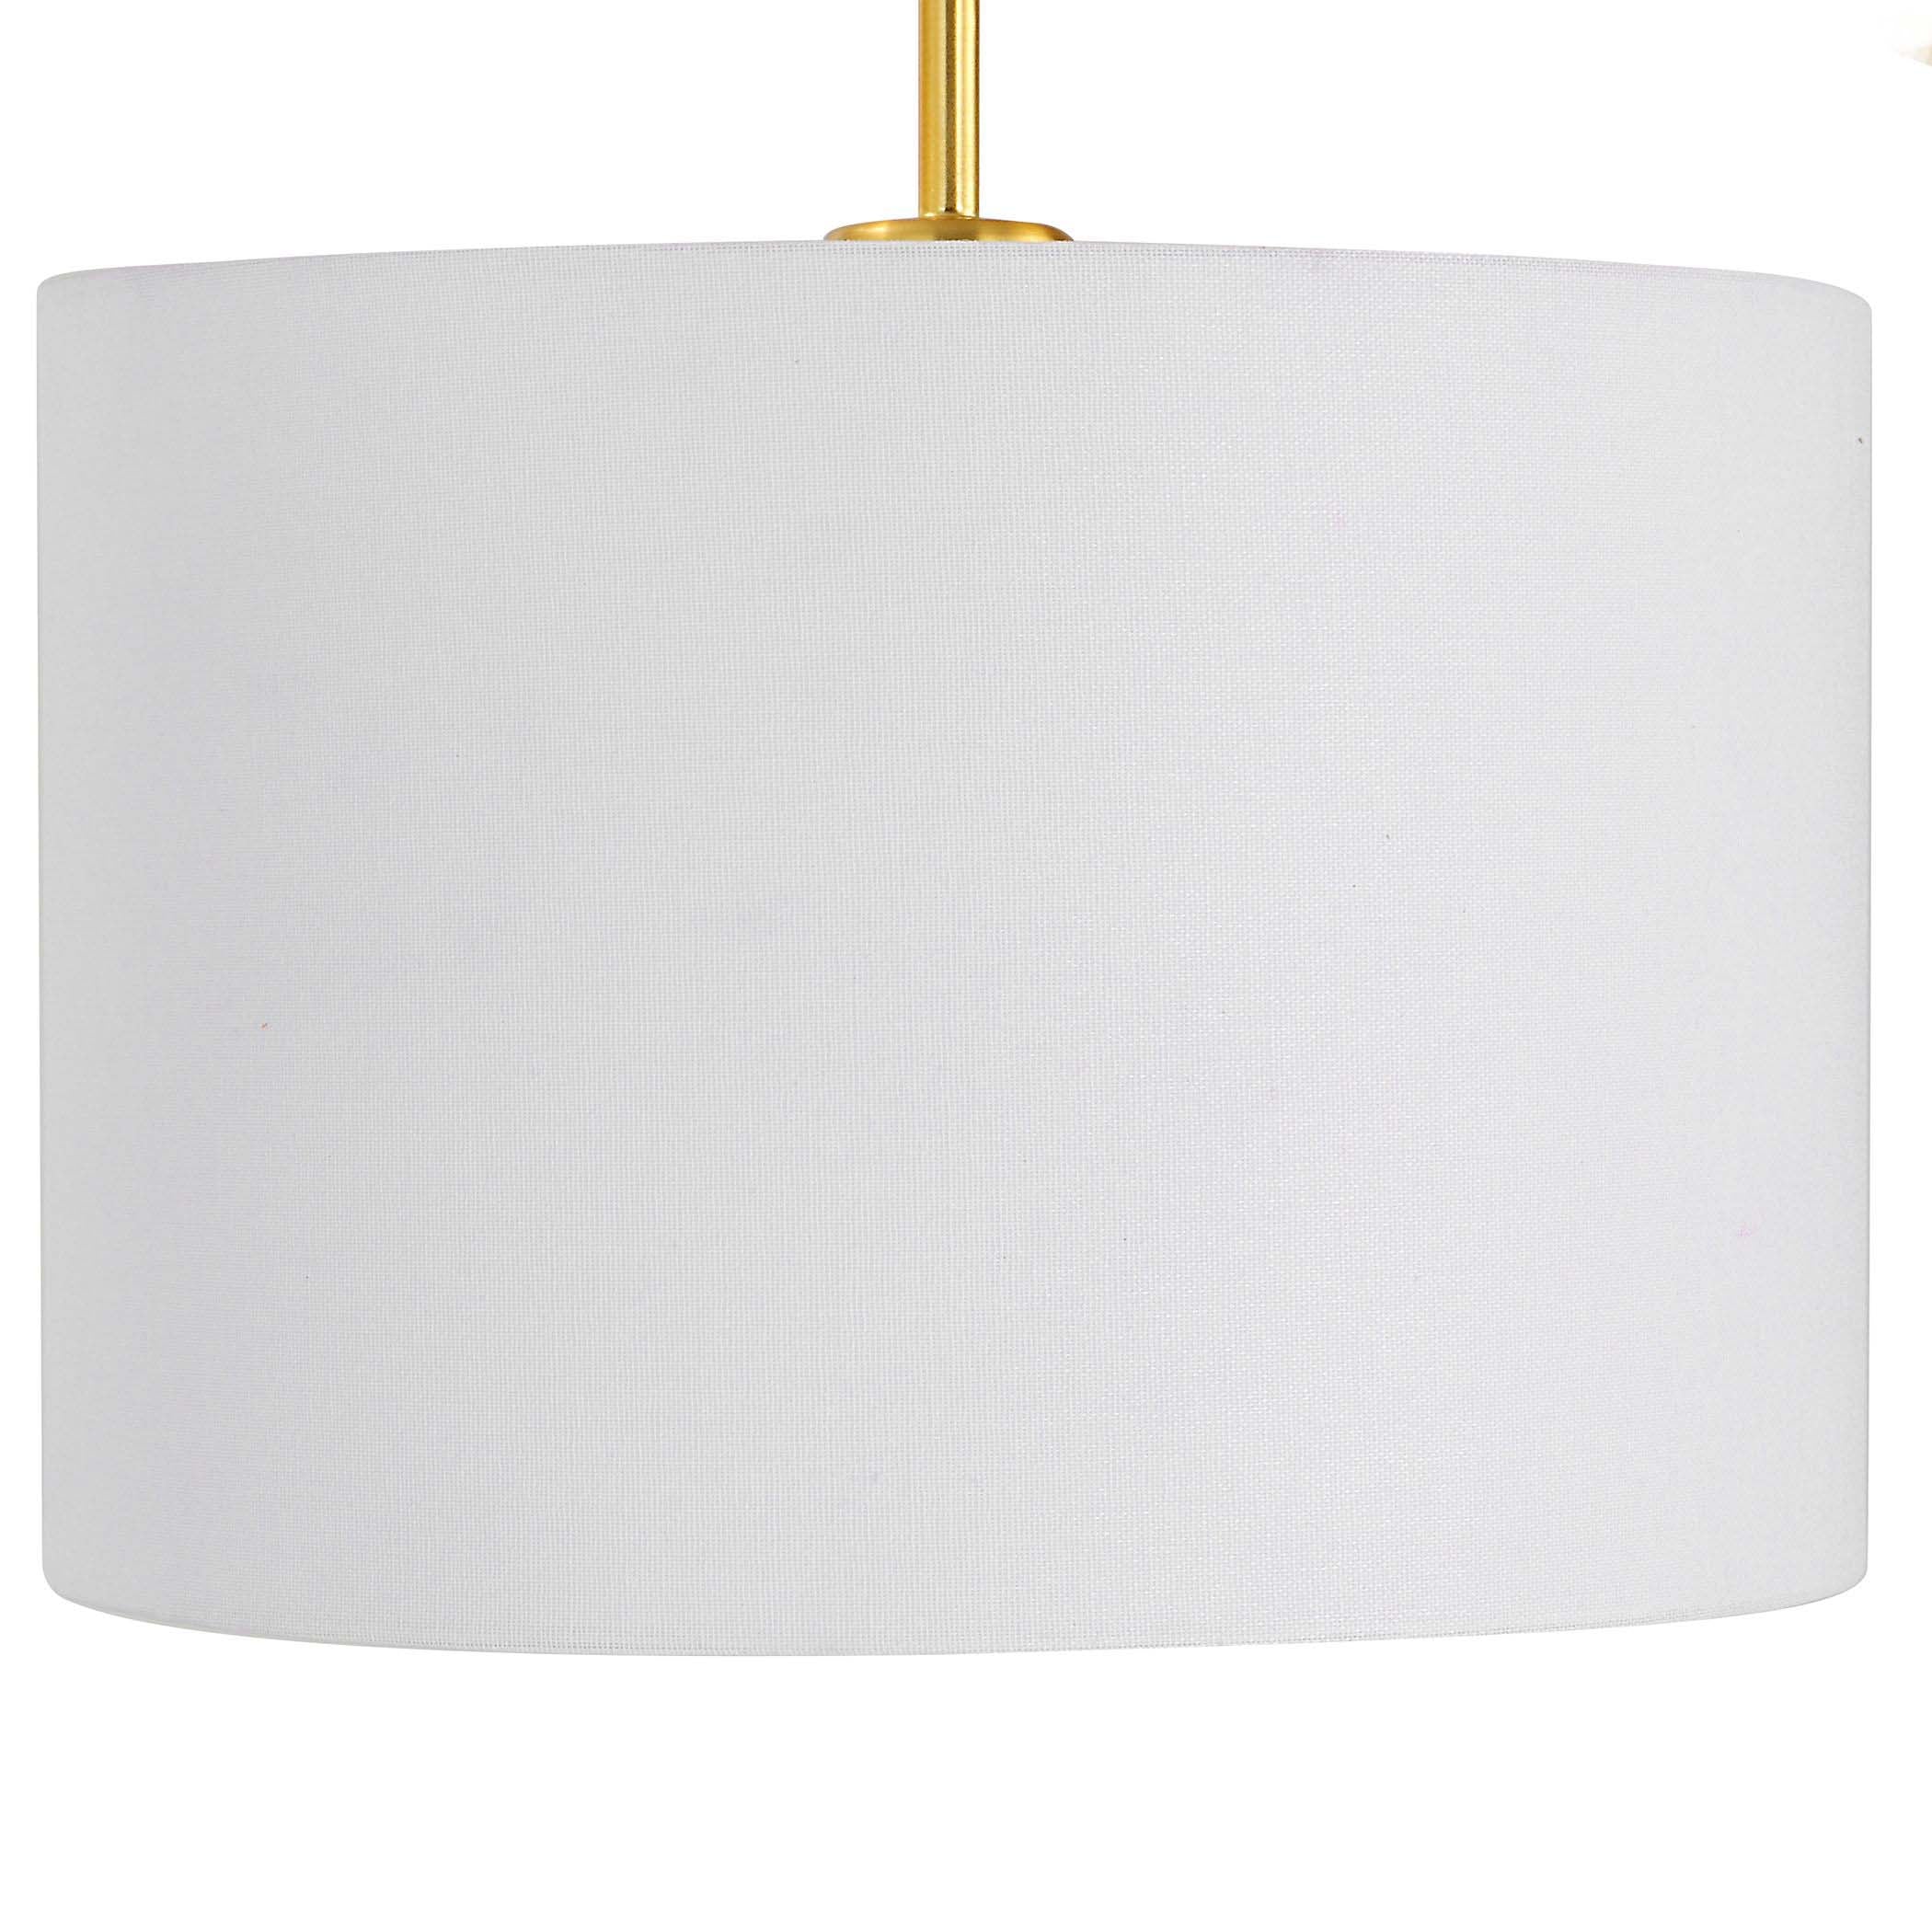 Decor Market Floor Lamp - Gold/White